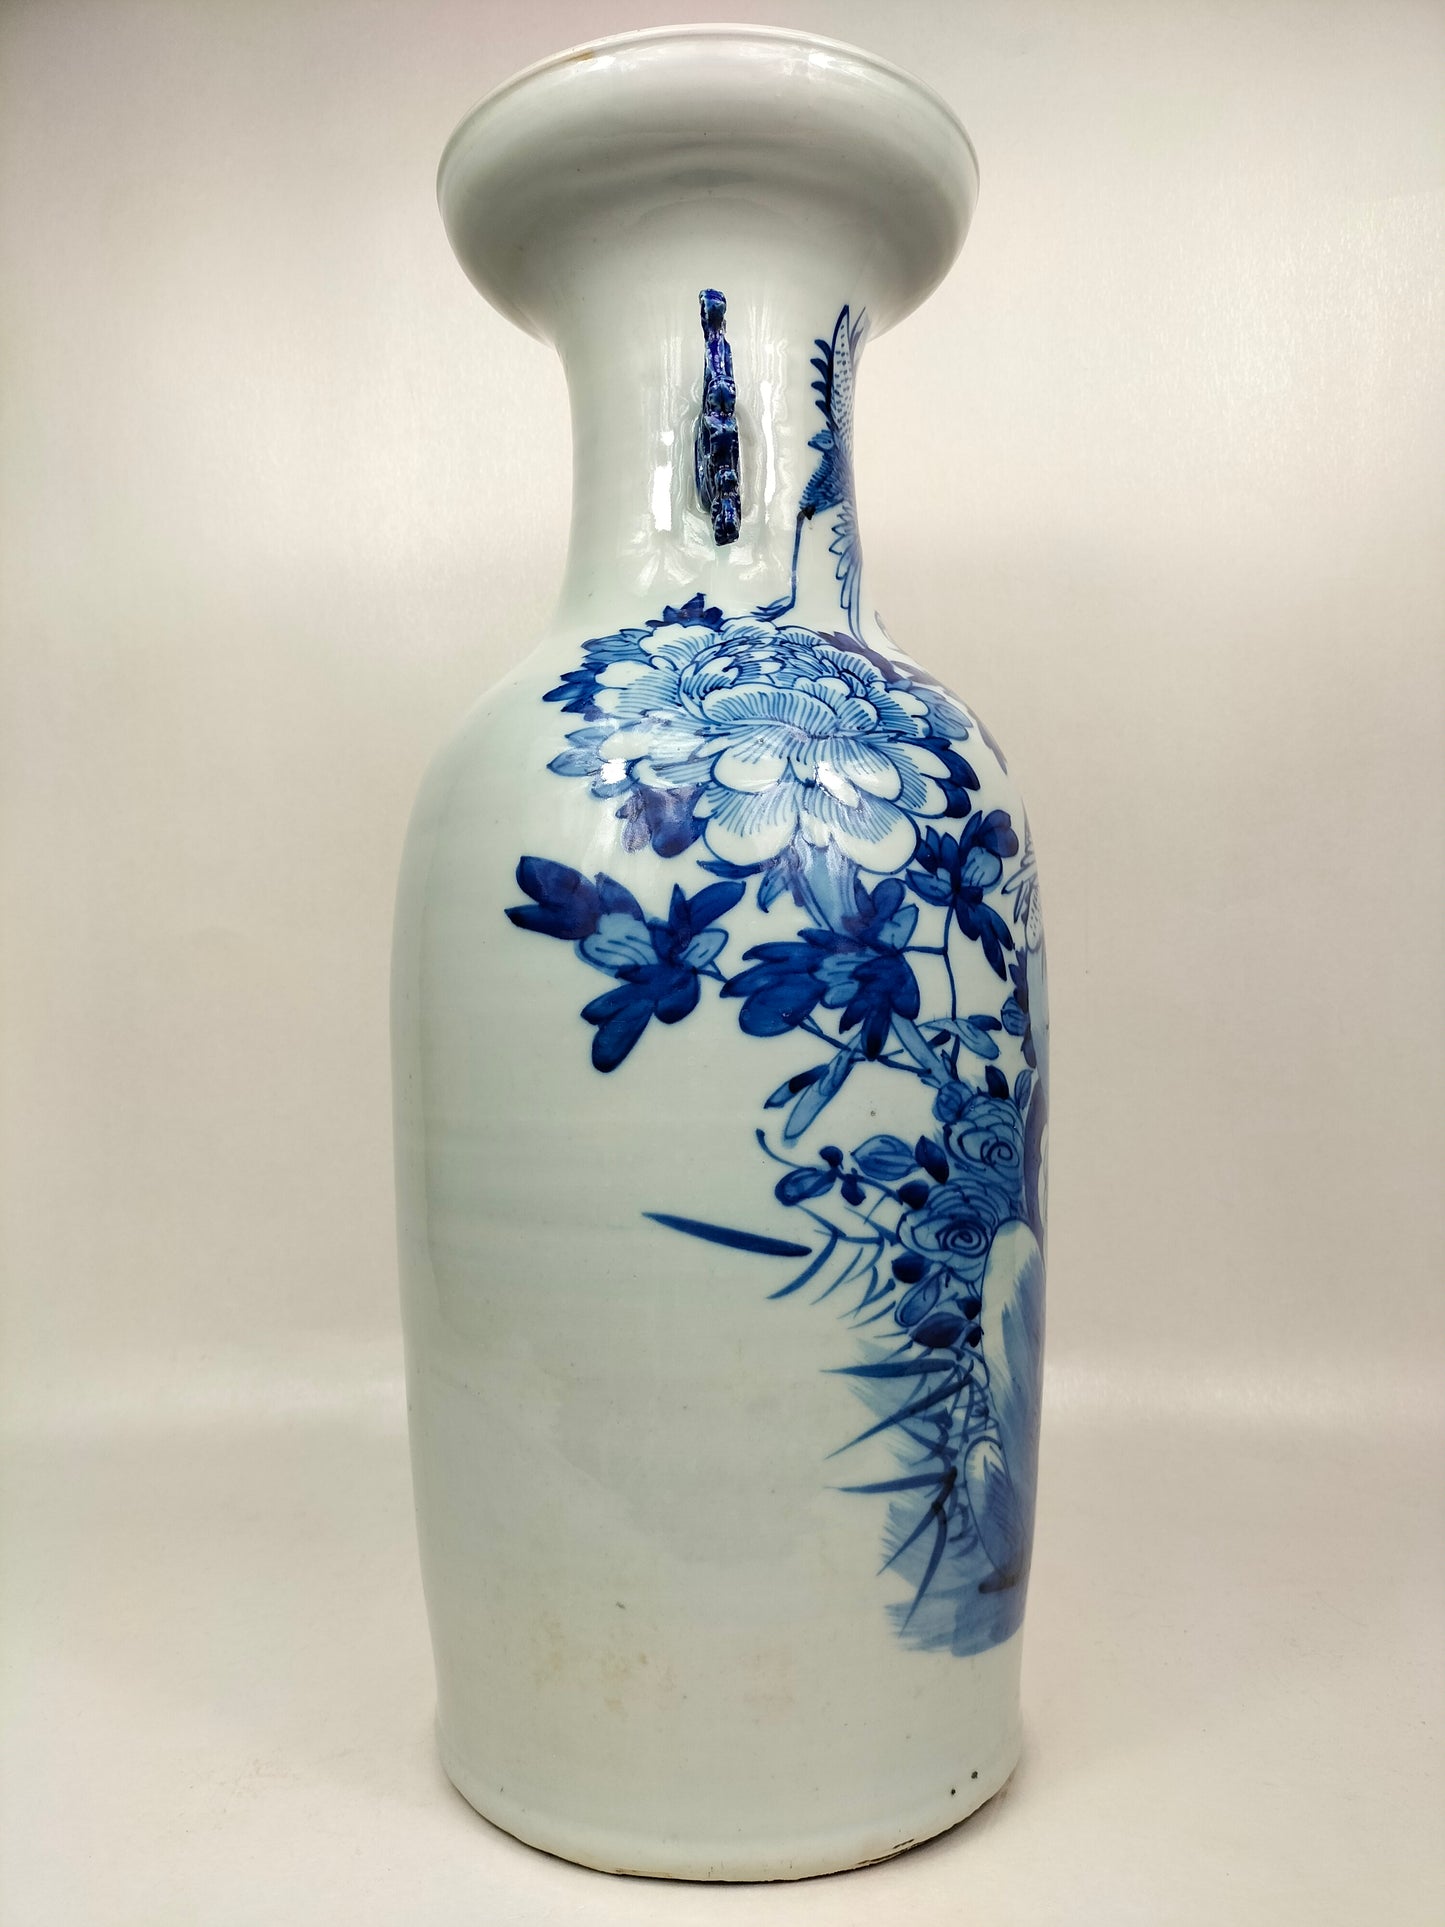 مزهرية صينية أثرية كبيرة بها رافعات وزهور // أزرق وأبيض - أسرة تشينغ - القرن التاسع عشر